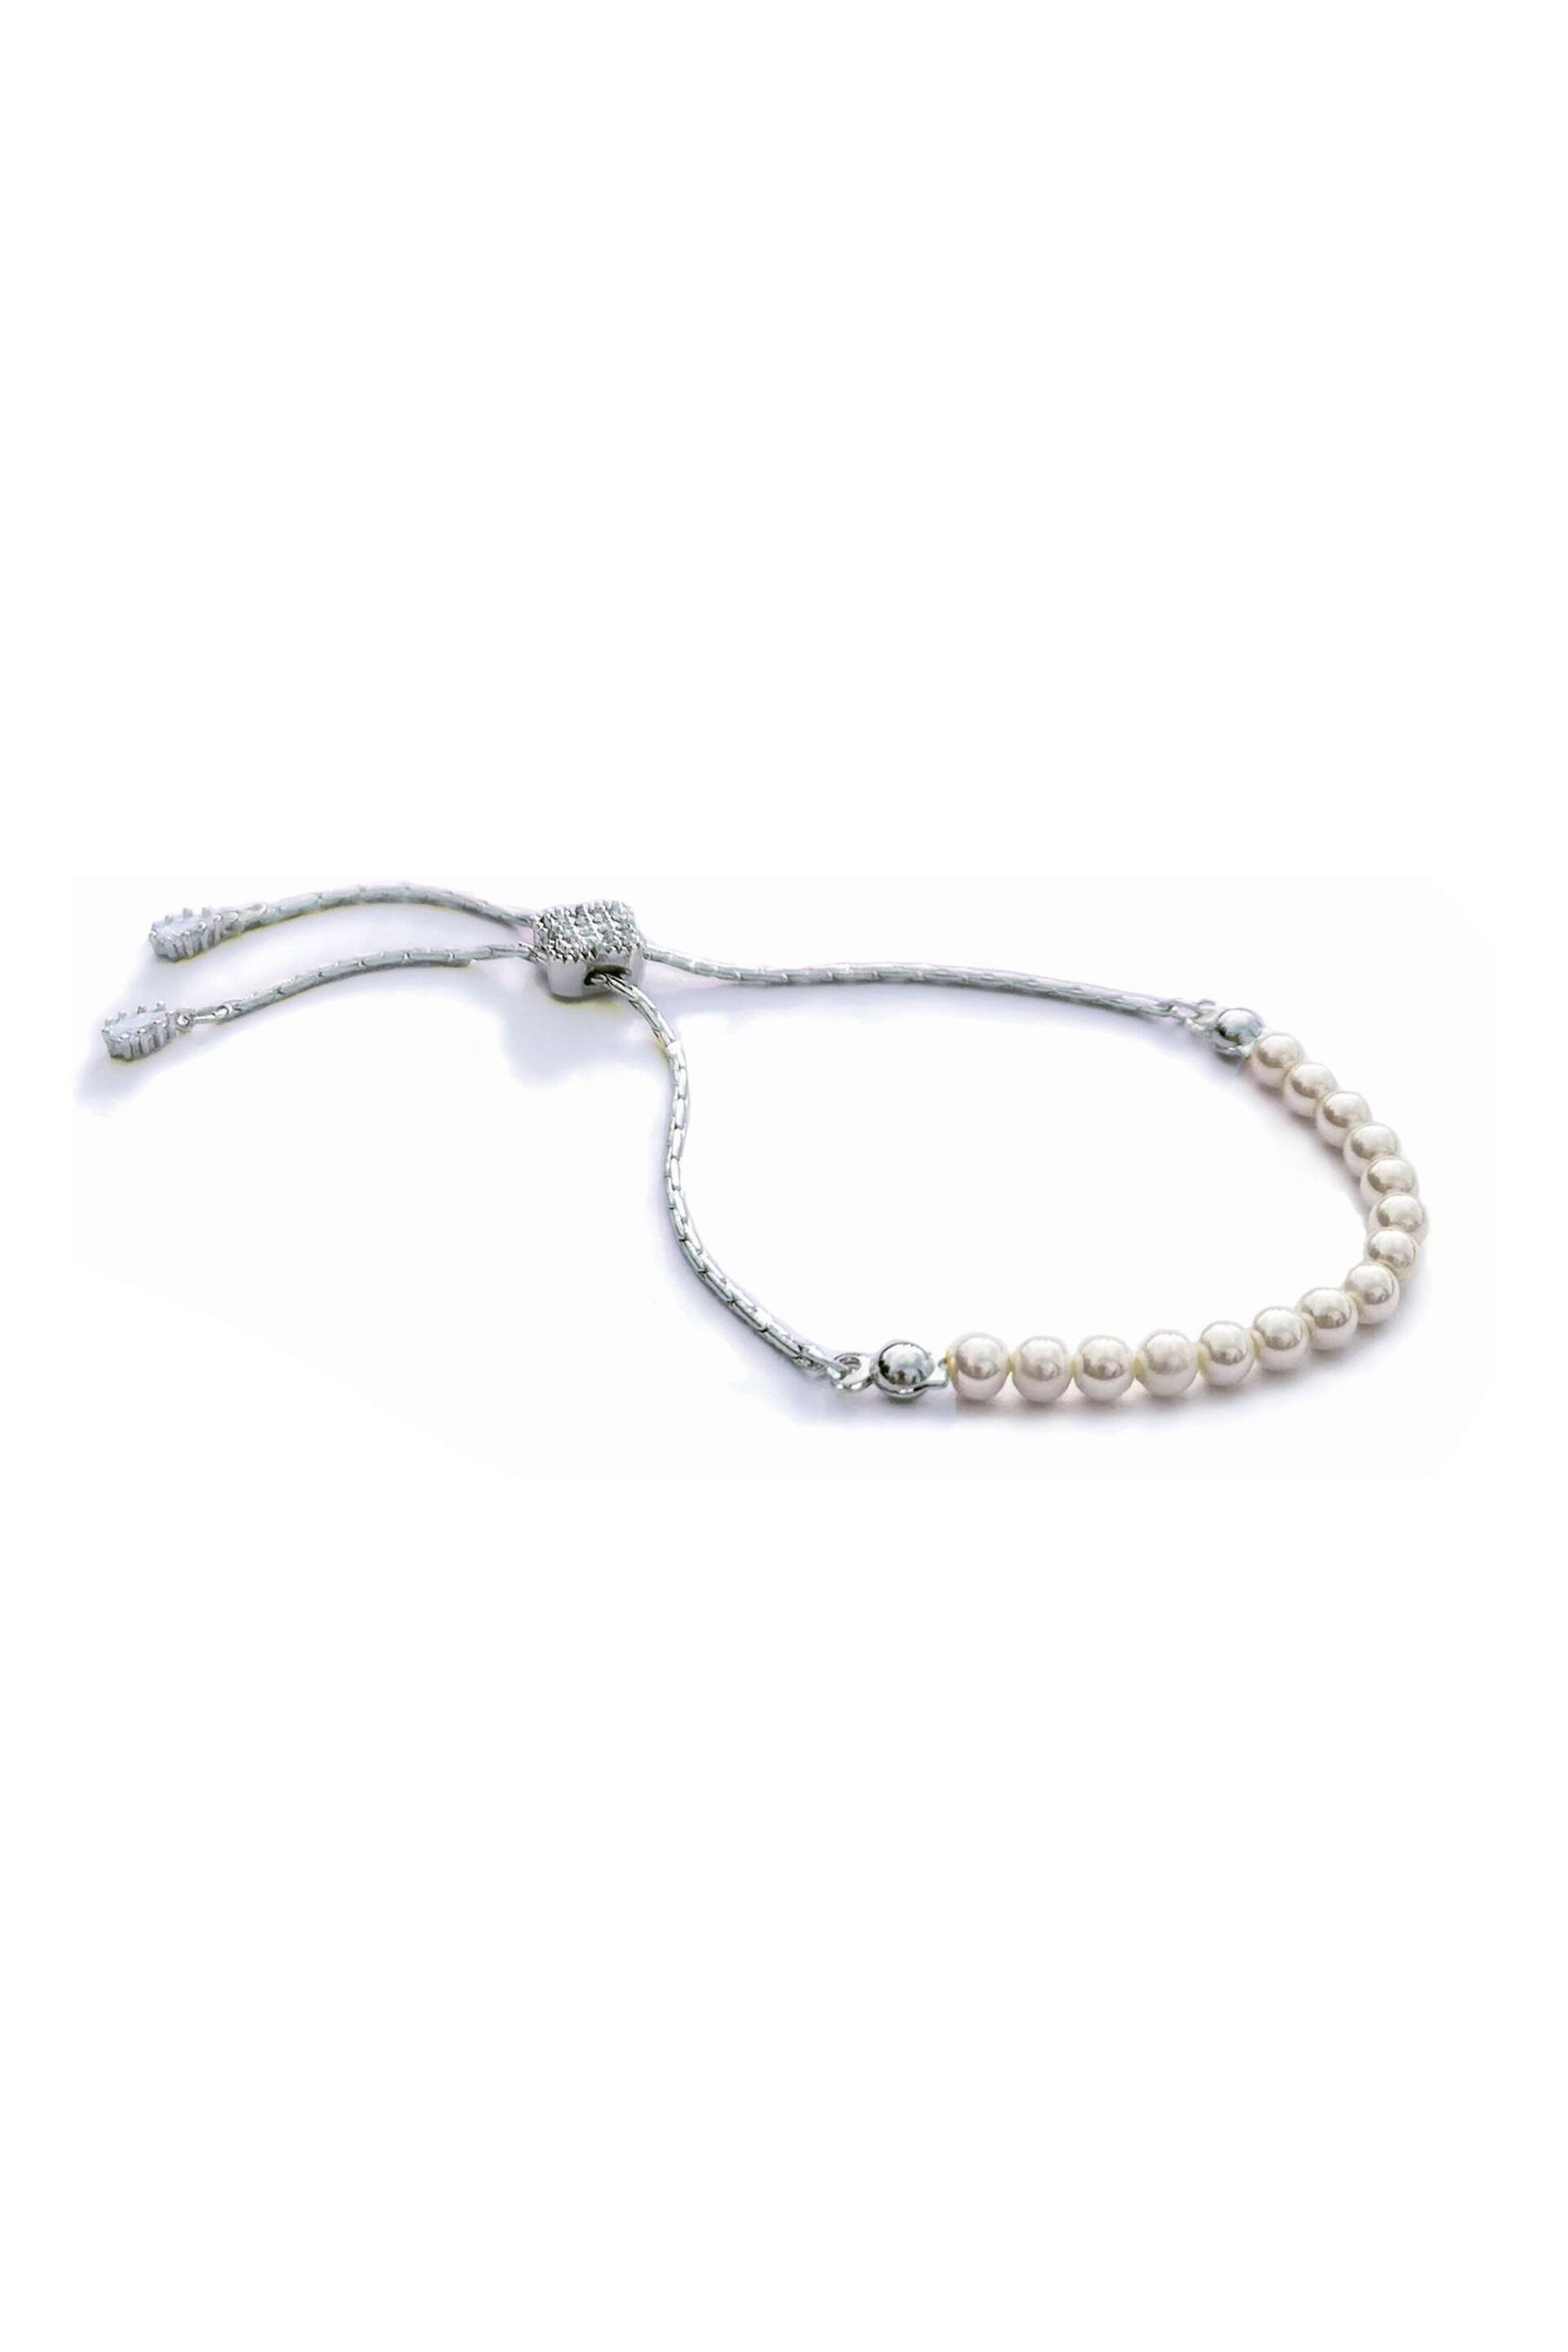 Ivory & Co Rhodium Carlisle And Pearl Dainty Toggle Bracelet - Image 1 of 5